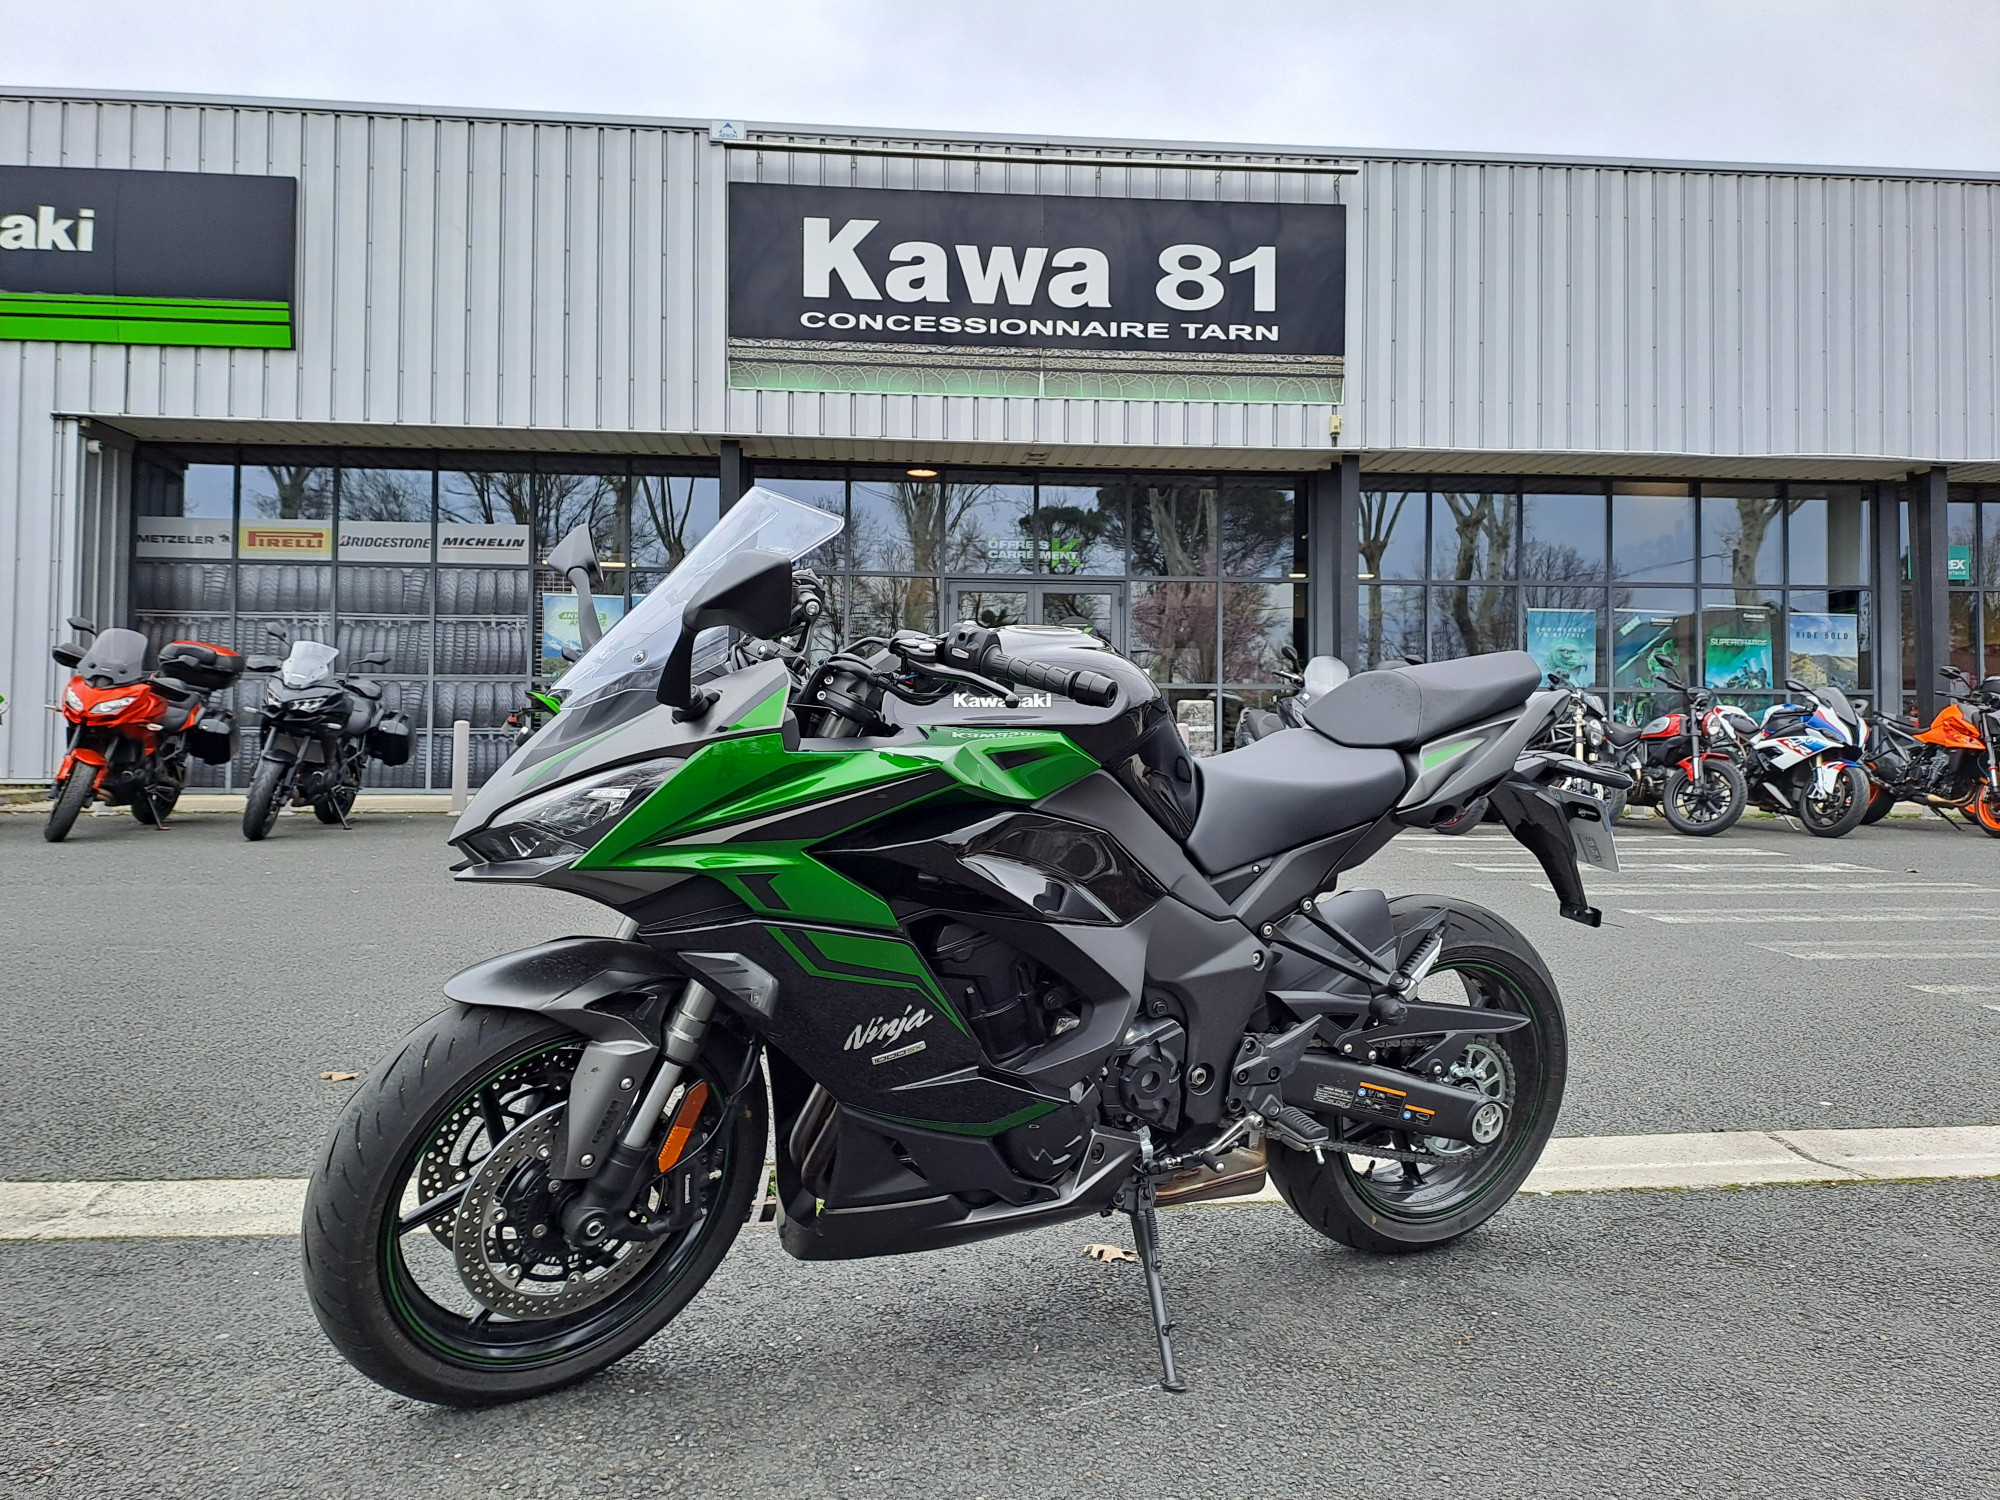 Annonce moto Kawasaki NINJA 1000 SX